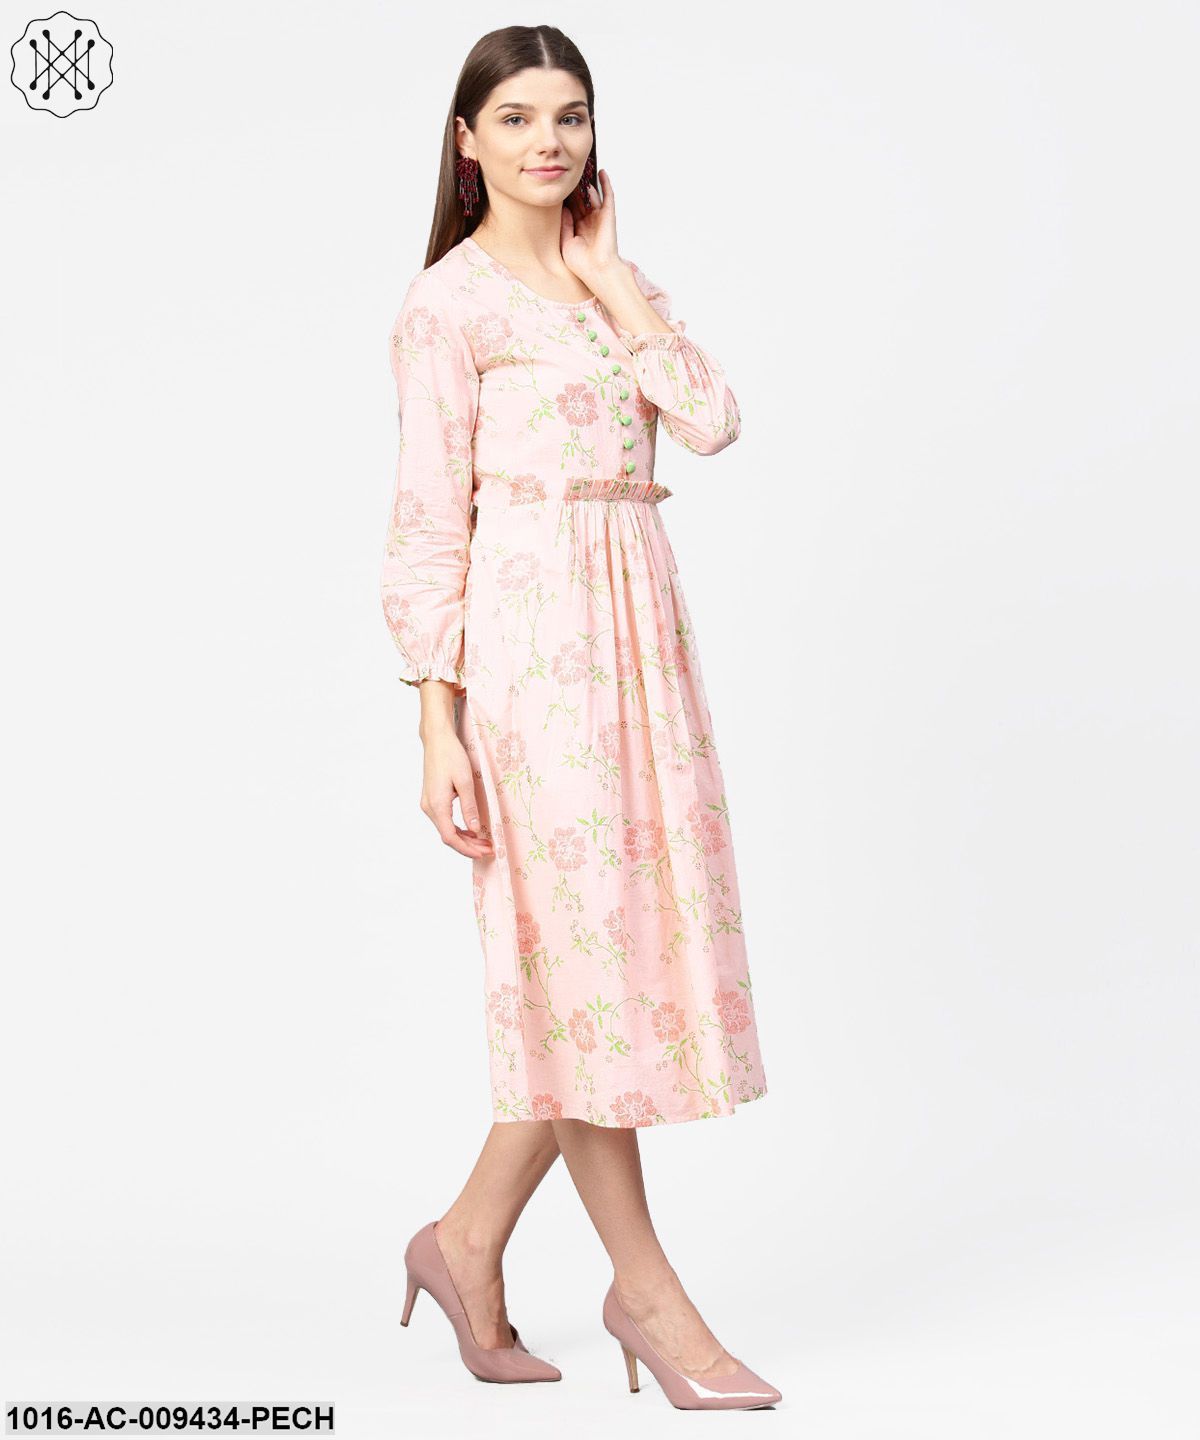 Peach Printed 3/4Th Sleeve Cotton A-Line Dress